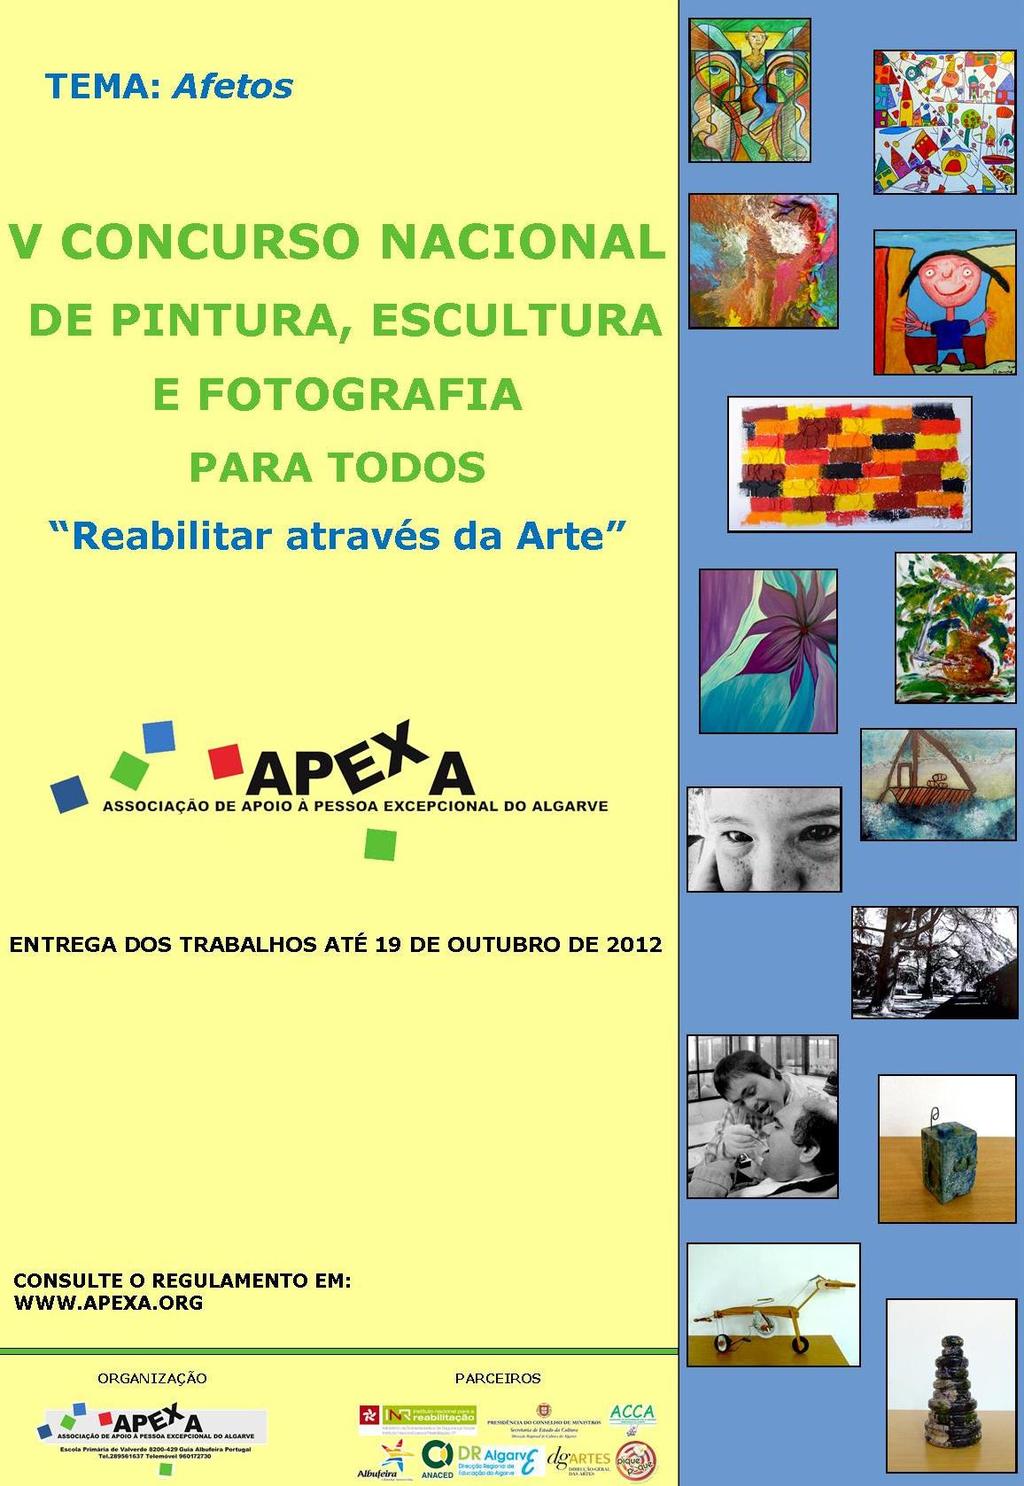 V Concurso Nacional de Pintura, Escultura e Fotografia sobre o tema Afetos Data limite para concorrer: 19 de Outubro Promotor: APEXA - Associação de Apoio à Pessoa Excepcional do Algarve A APEXA